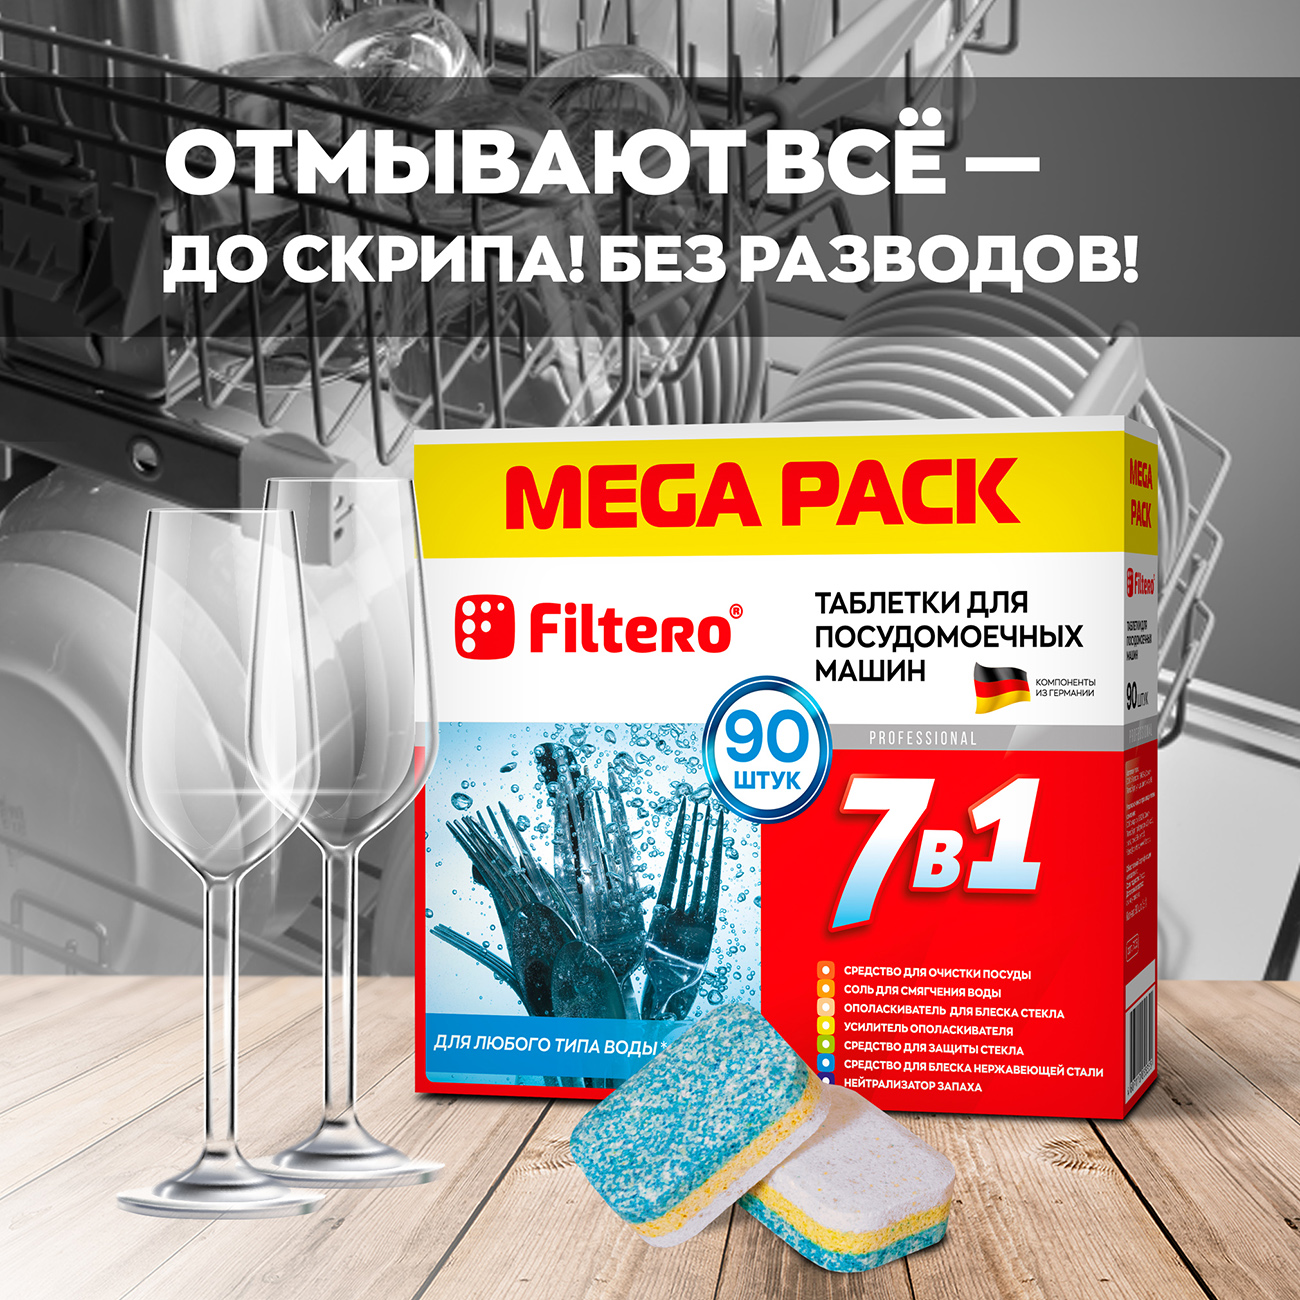 Таблетки Filtero для посудомоечной машины 7 в 1 90шт mega pack - фото 3